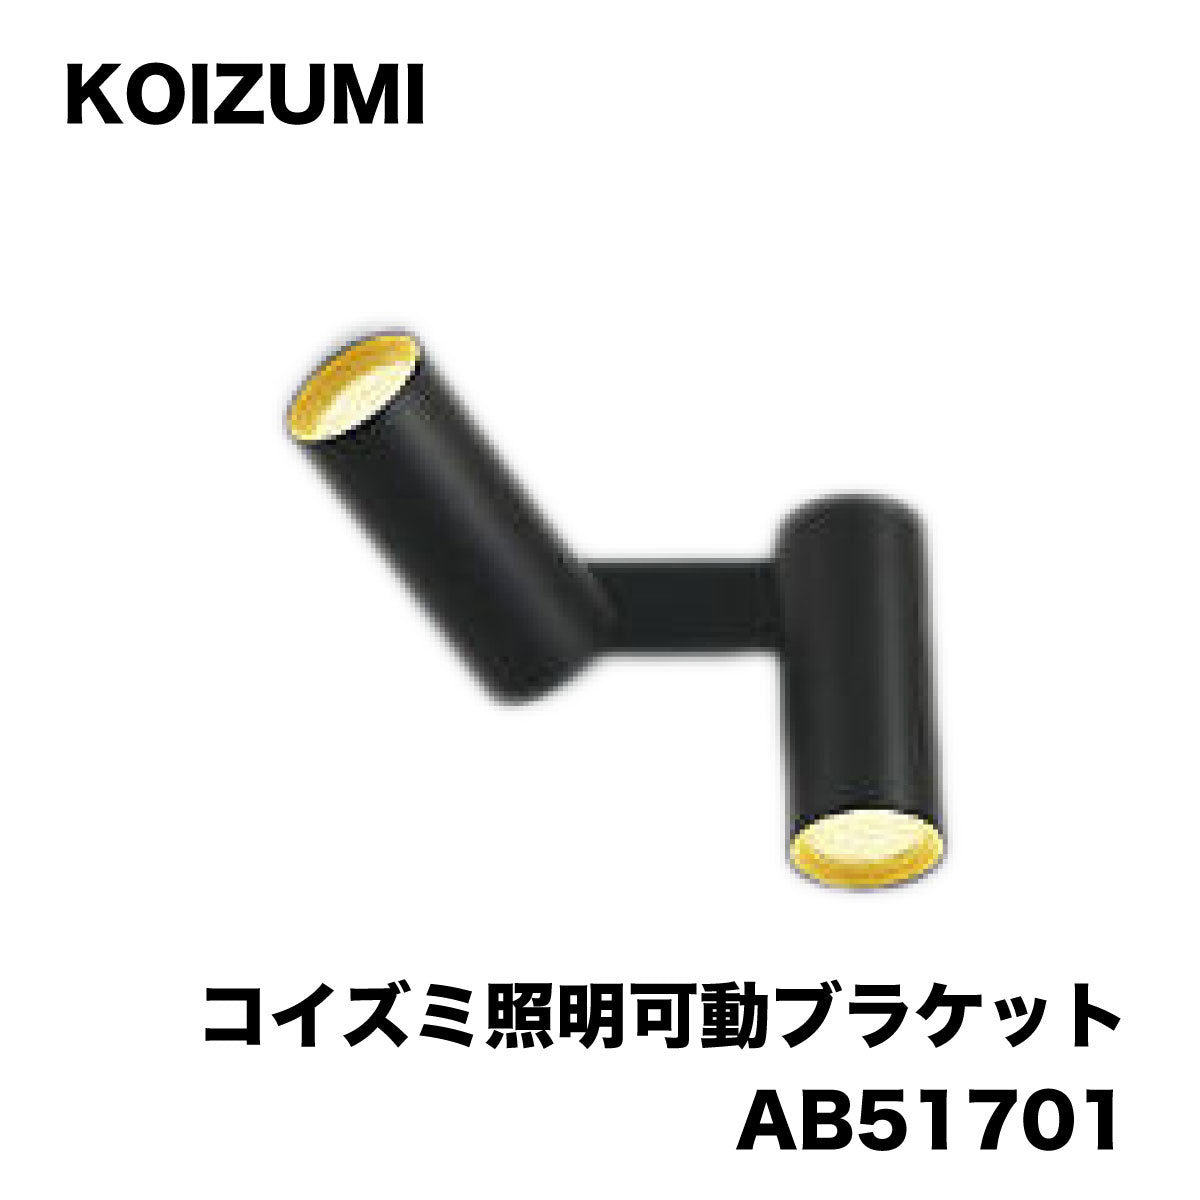 【未使用品】【開封品】【中古A】 KOIZUMI コイズミ 照明可動ブラケット AB51701 【未使用アウトレット品】